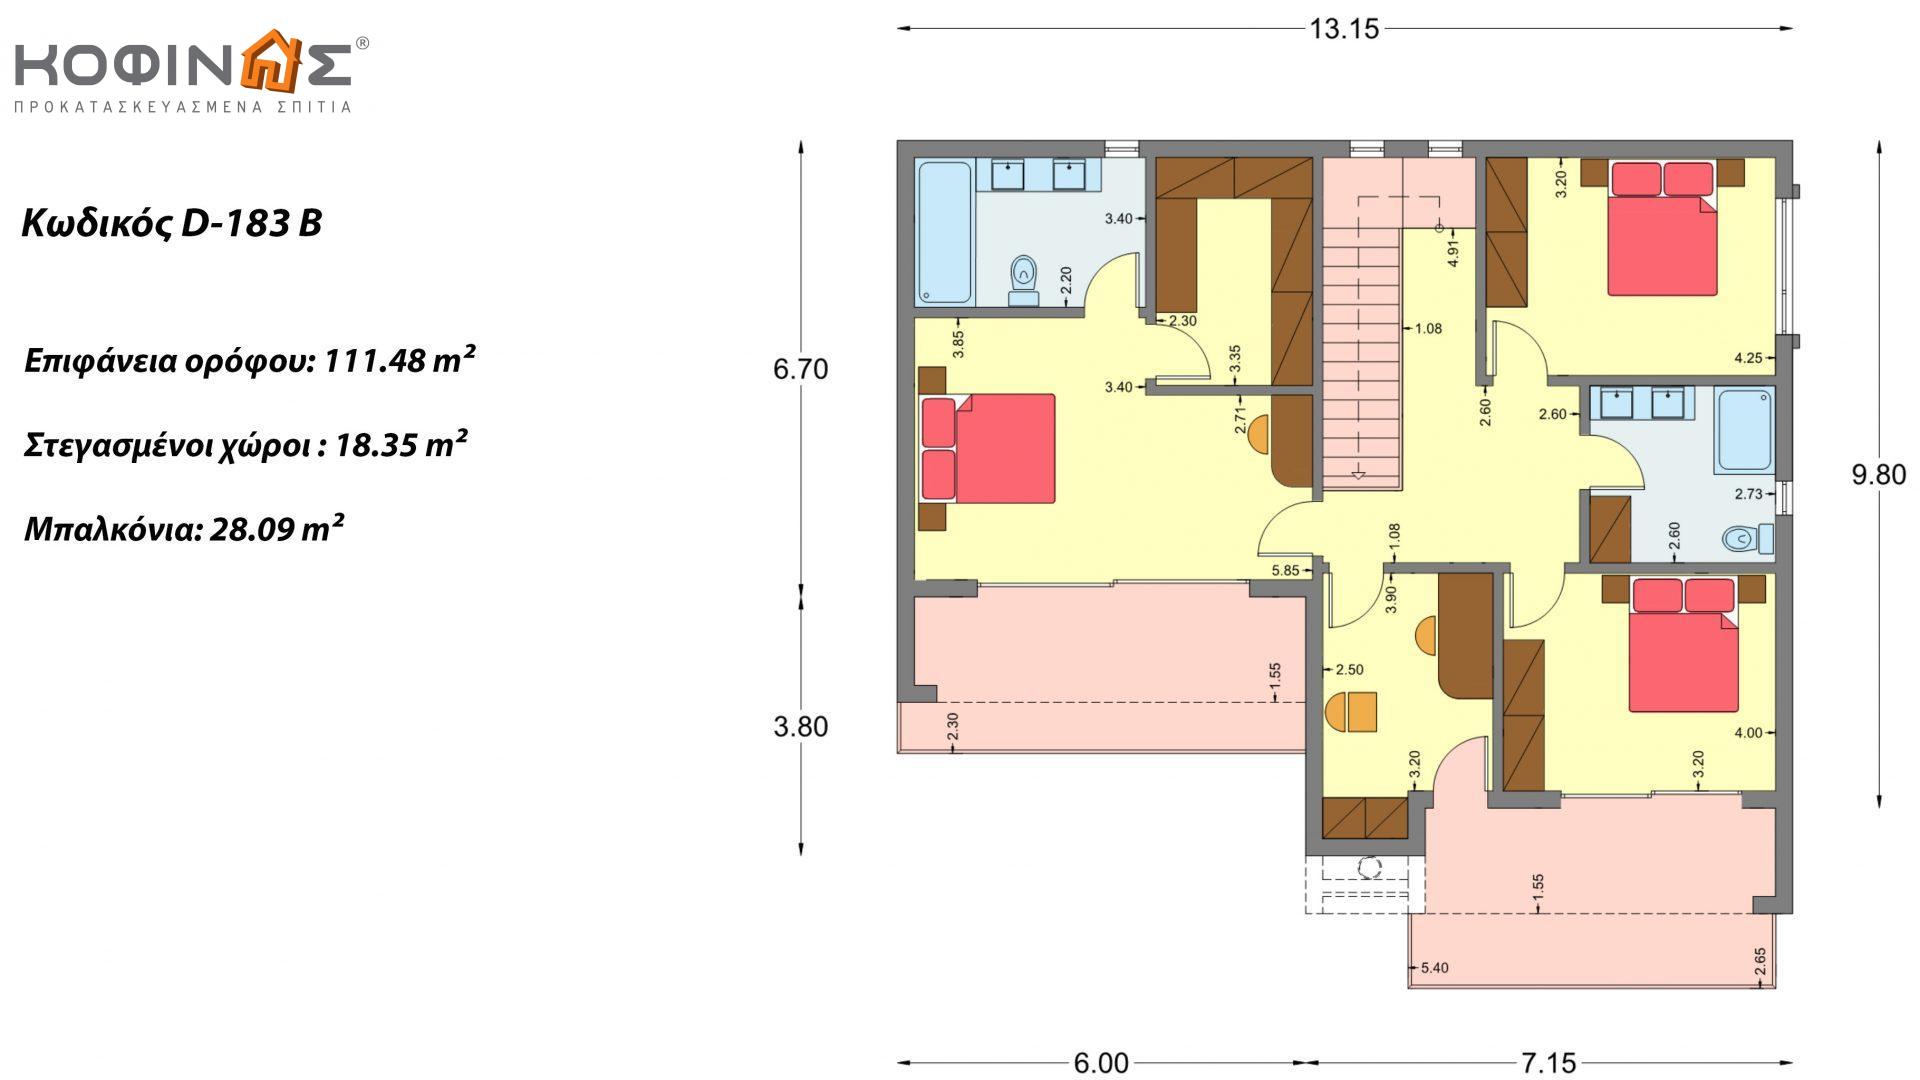 Διώροφη κατοικία D 183B, συνολικής επιφάνειας 183,77 τ.μ.,+Γκαράζ 41,98 m²(=225,75 m²), στεγασμένοι χώροι 59,80 τ.μ., και μπαλκόνια 28.09 τ.μ.